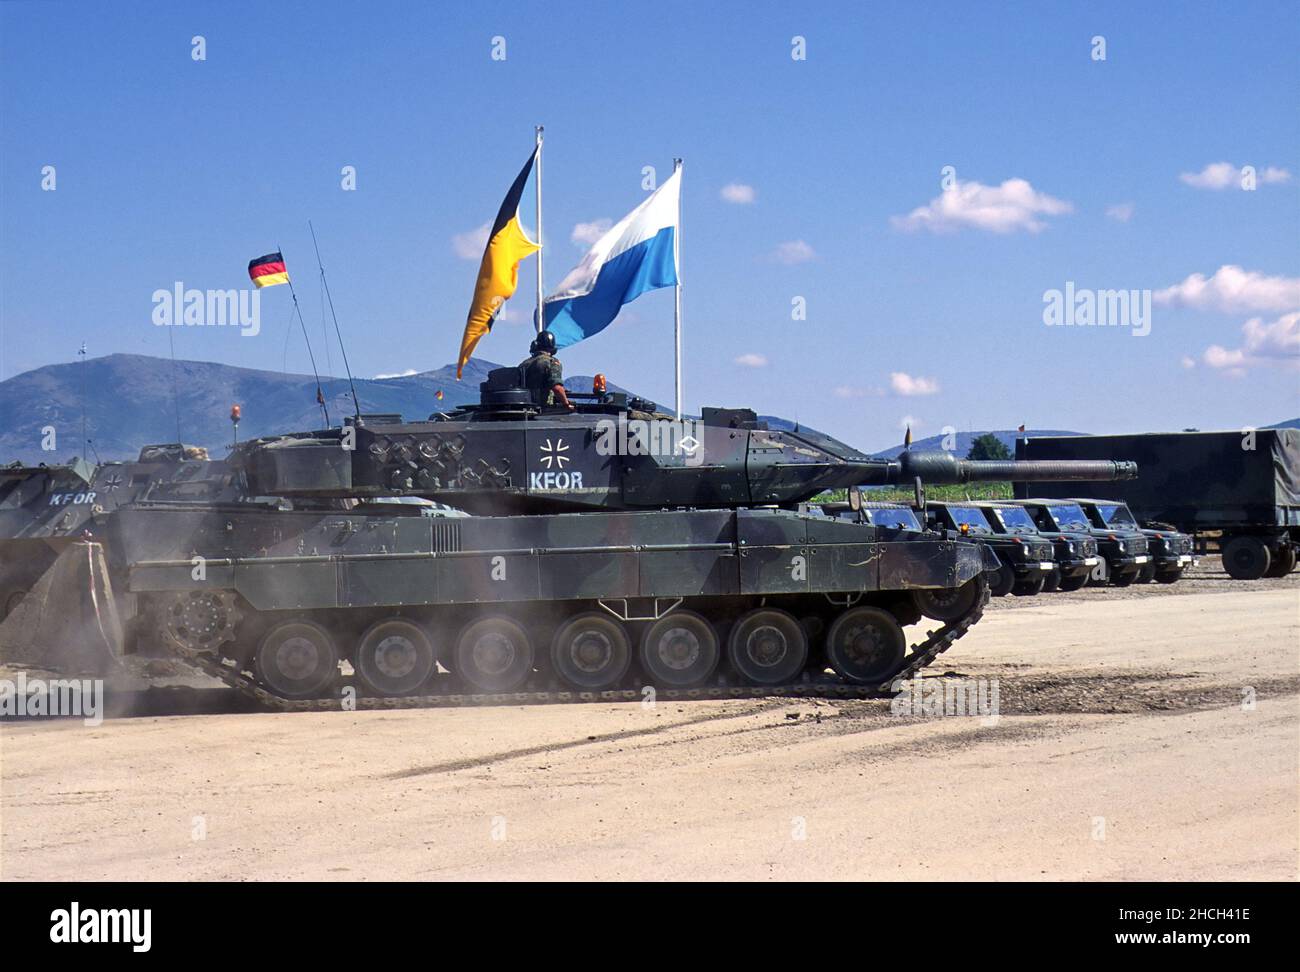 - NATO intervention in Kosovo, Leopard 2 tank of German Army near the town of Orahovac (July 2000)   - Intervento NATO in Kossovo, carro armato Leopard 2 dell'esercito tedesco presso la città di Orahovac (Luglio 2000) Stock Photo